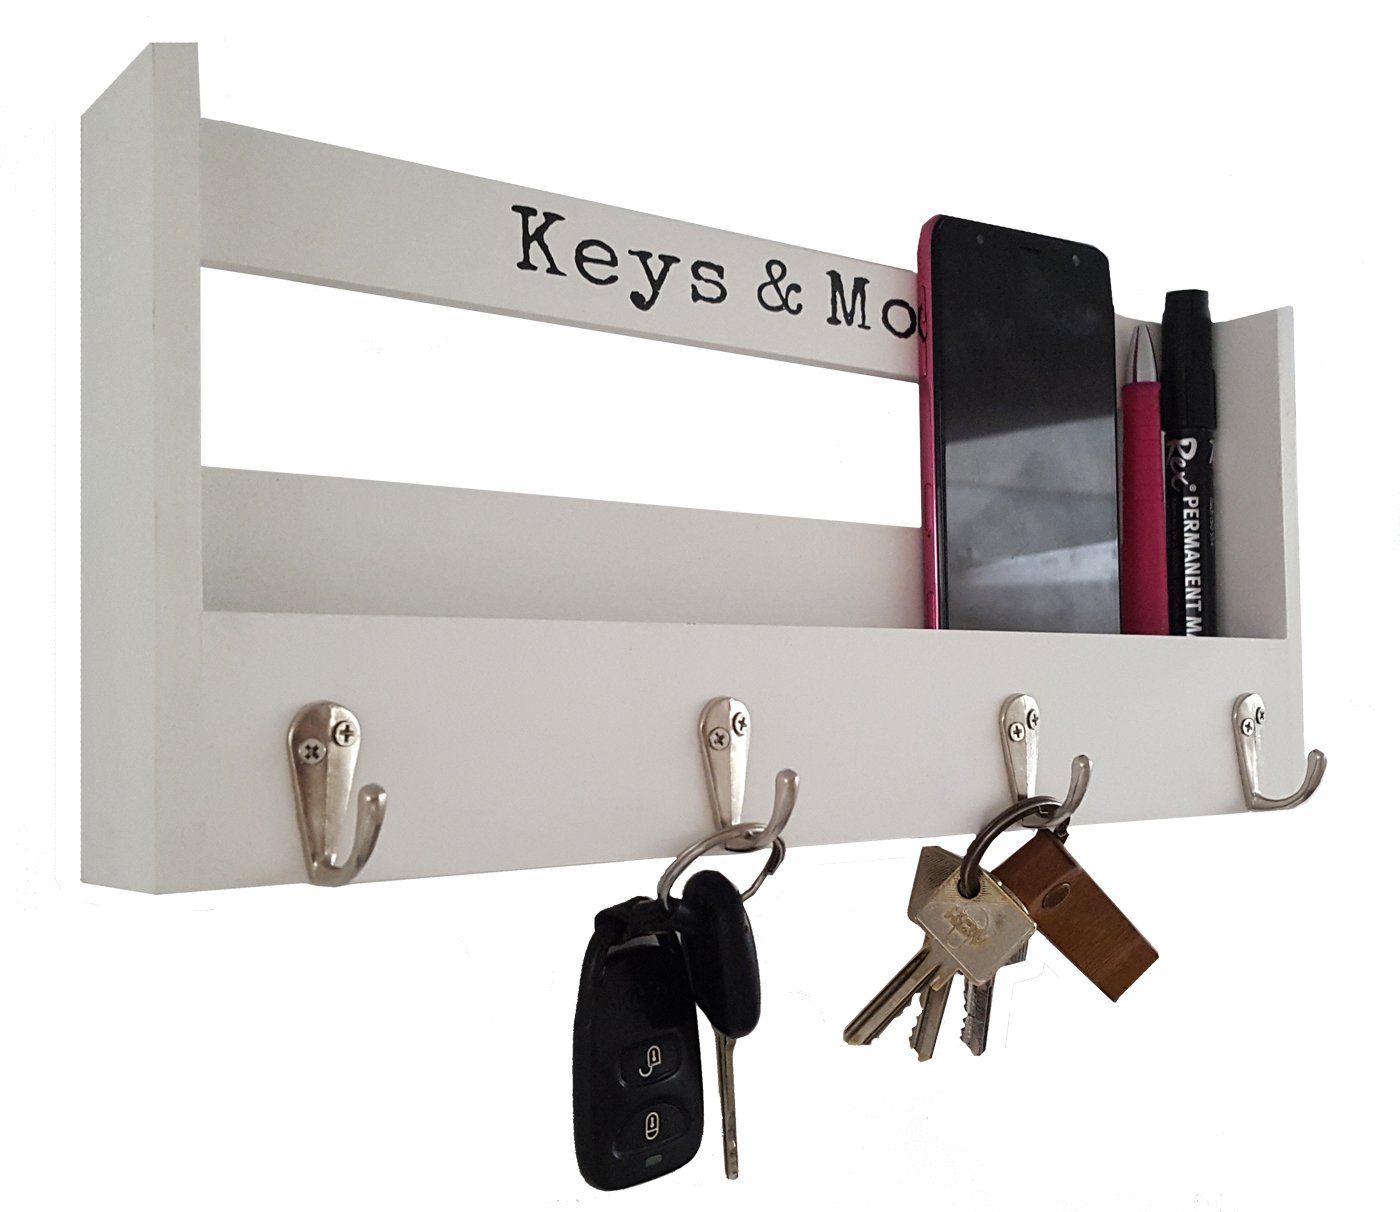 Eingangsbereich Schlüssel, Schlüsselbrett aus Holz, Schlüsselkasten Home  Holz, Schlüsselkasten Familie, Schlüsselhaken Wand zur  Schlüsselaufbewahrung